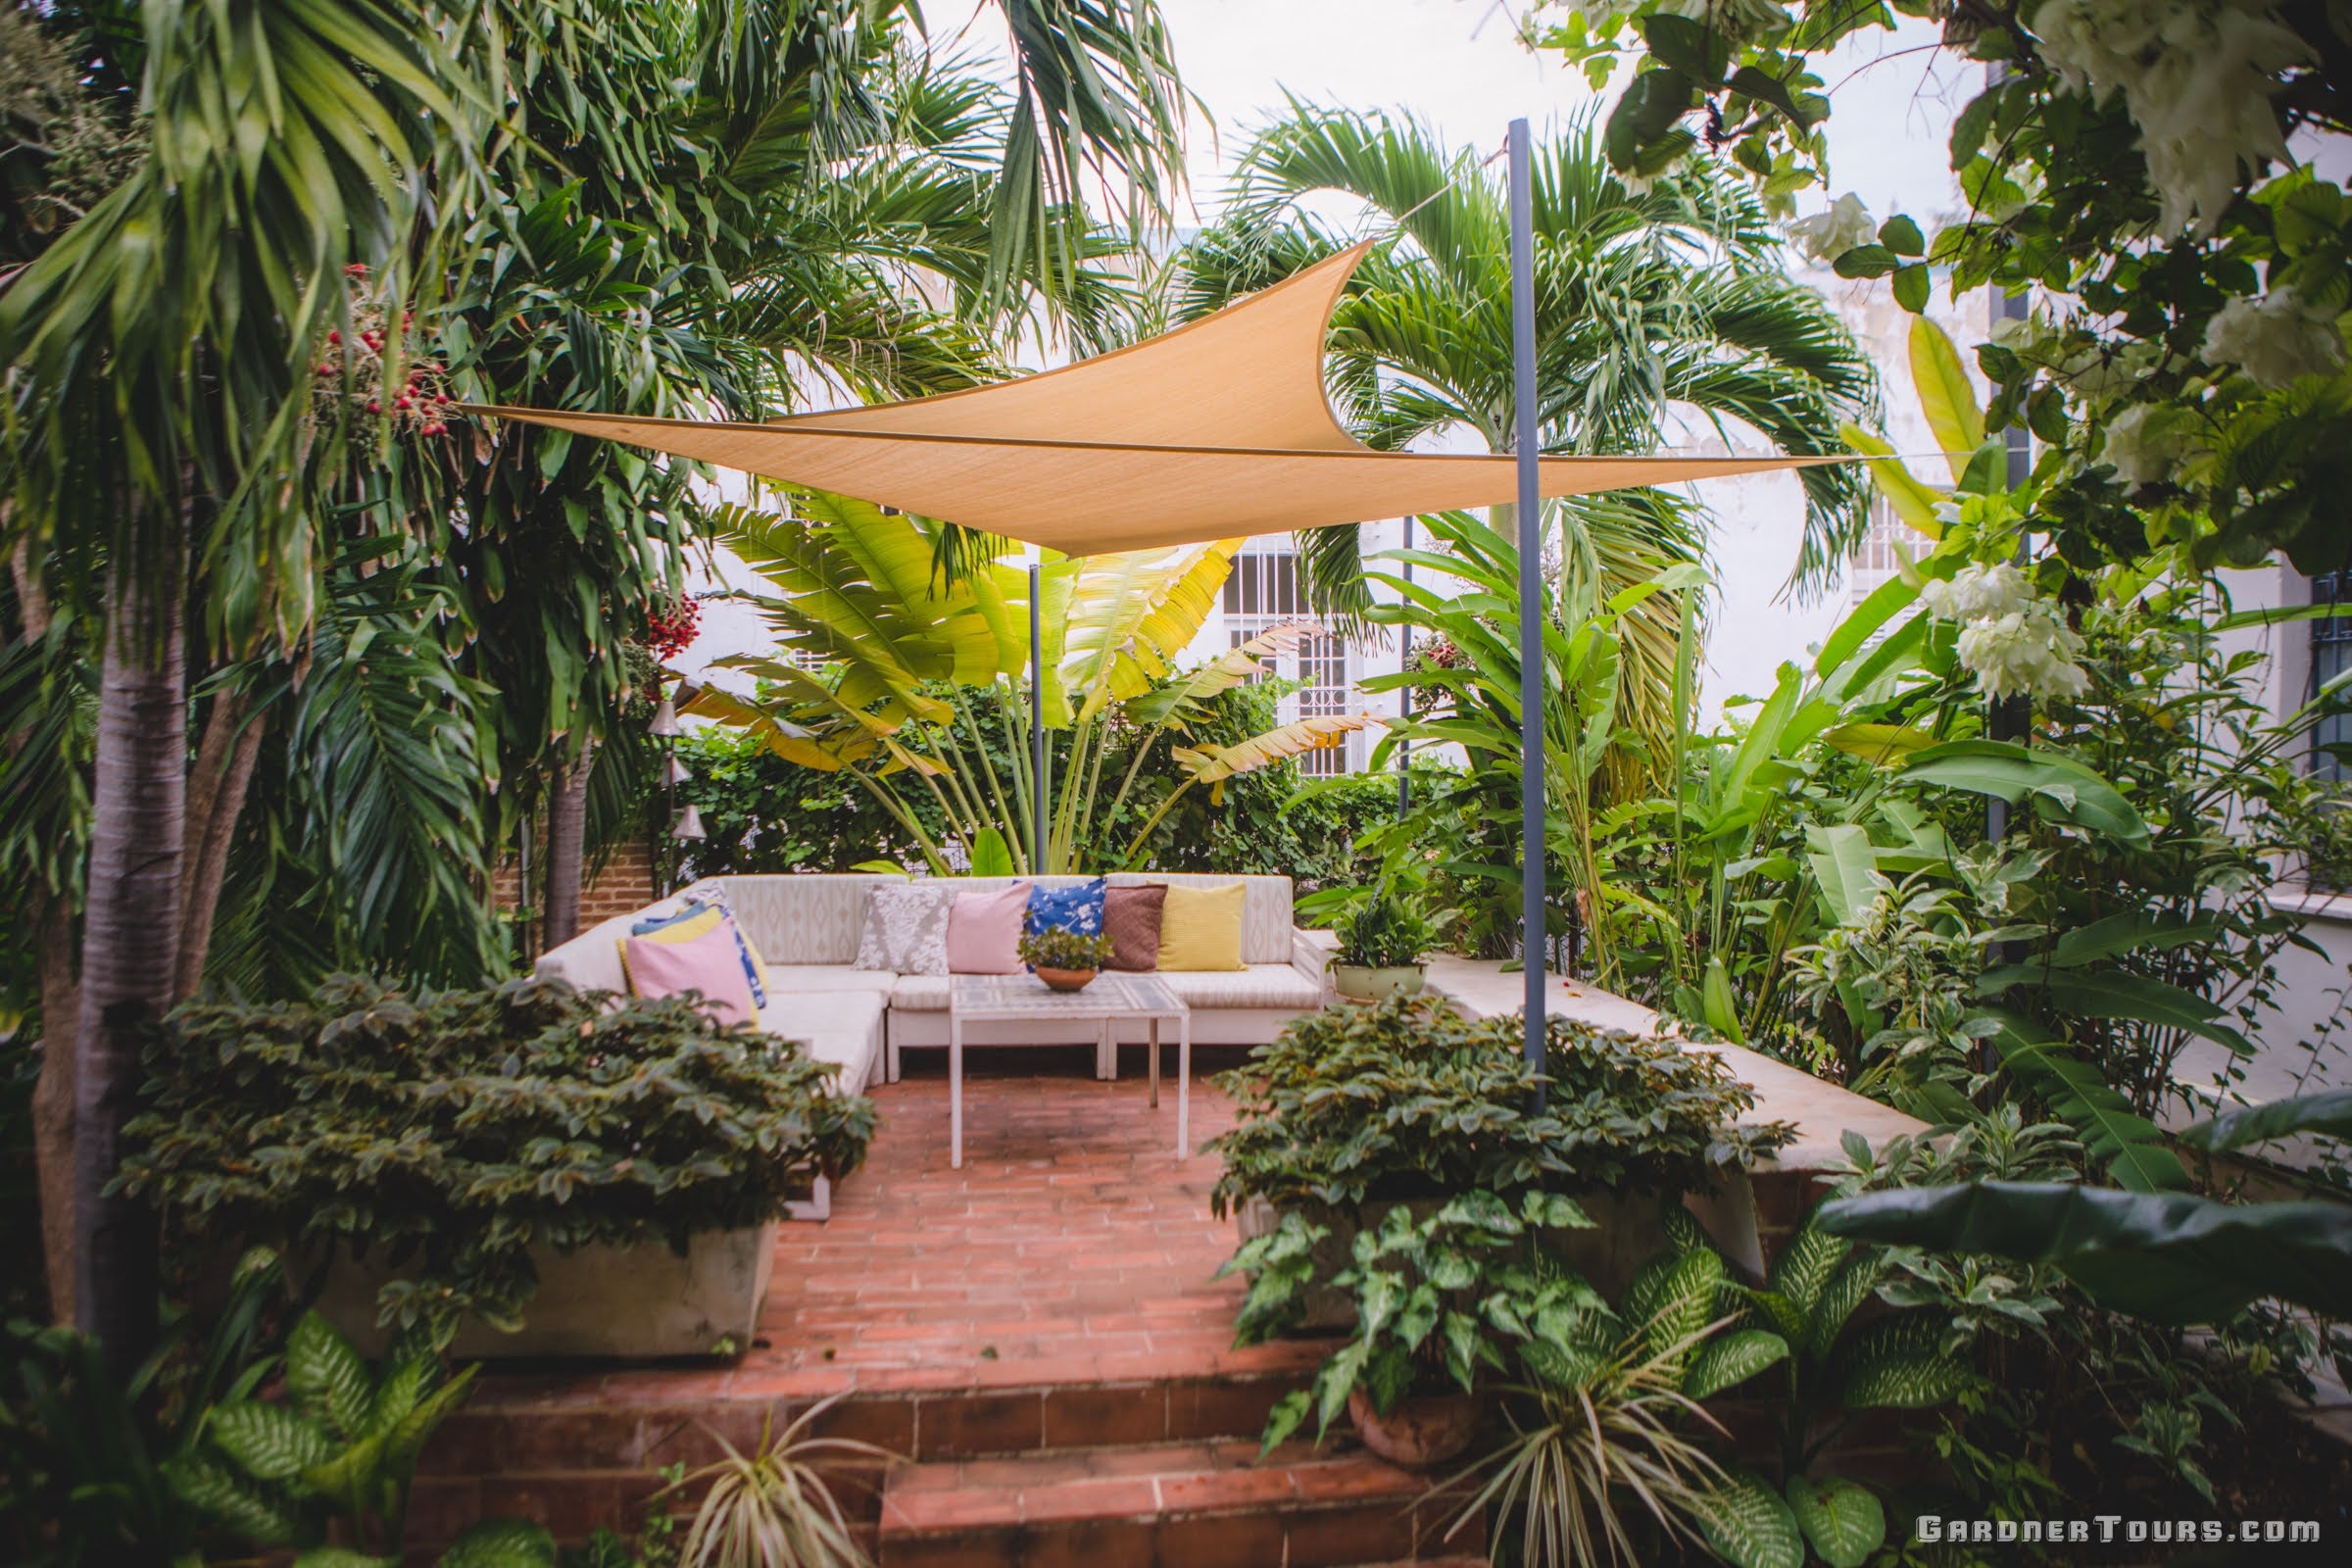 Private Garden Sitting Area at La Bodega El Vedado Restaurant in Vedado Havana, Cuba